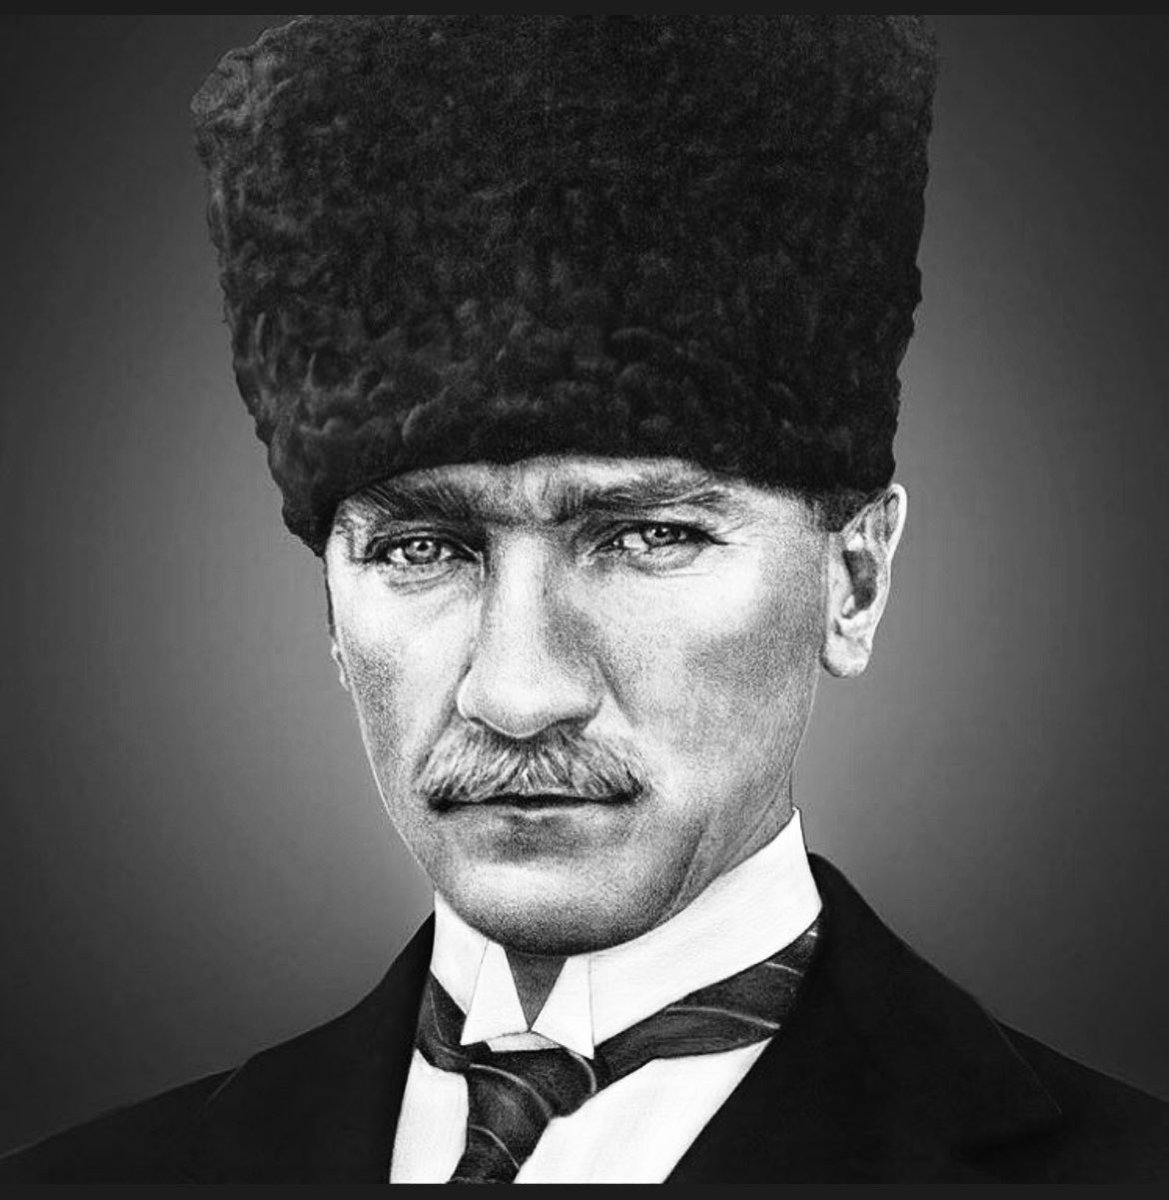 Bir ulusun kurtarıcısı, kurucu liderimiz Mustafa Kemal Atatürk’e saygı, minnet ve özlemle... #10Kasım #MustafaKemalAtatürk